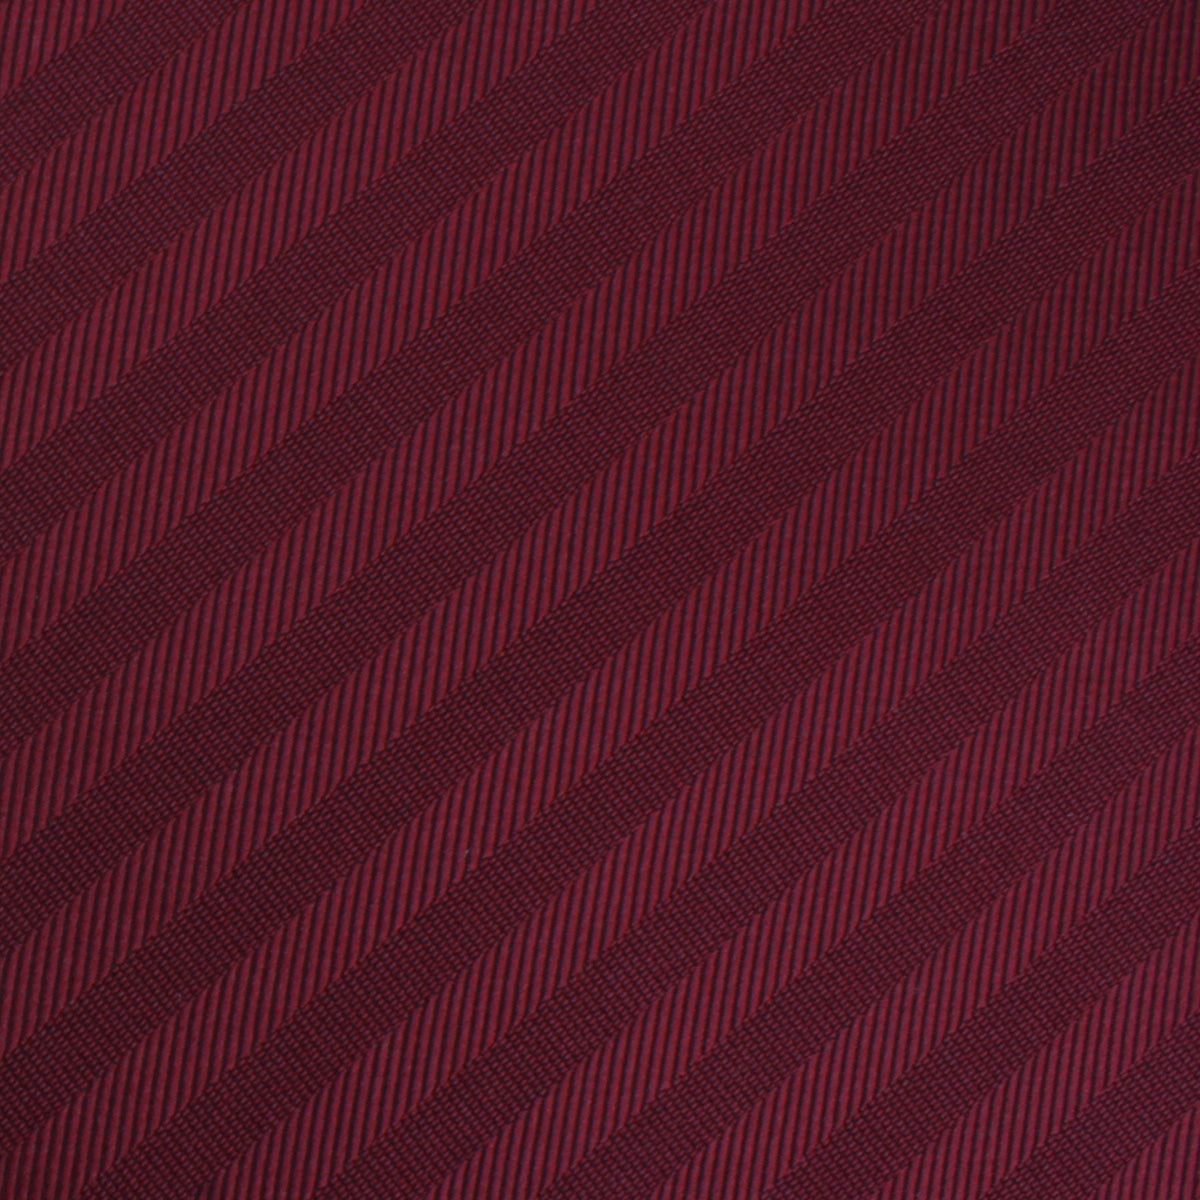 Merlot Wine Striped Necktie Fabric